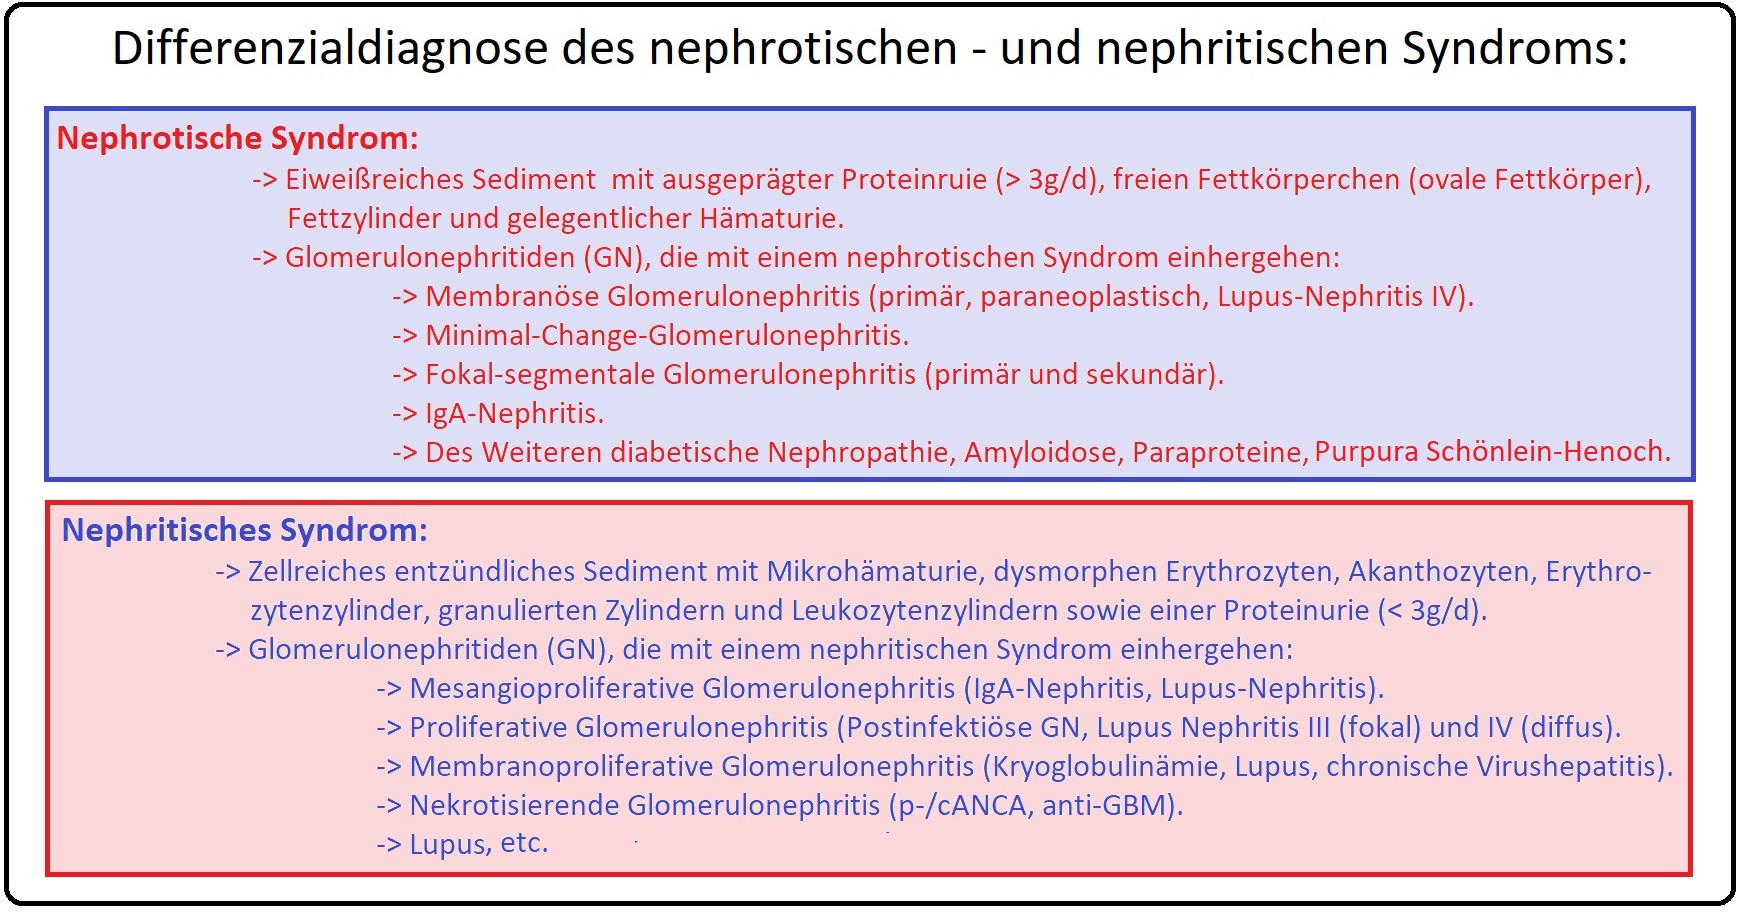 008 Differenzialdiagnose des nephrotischen   und nephritischen Syndroms